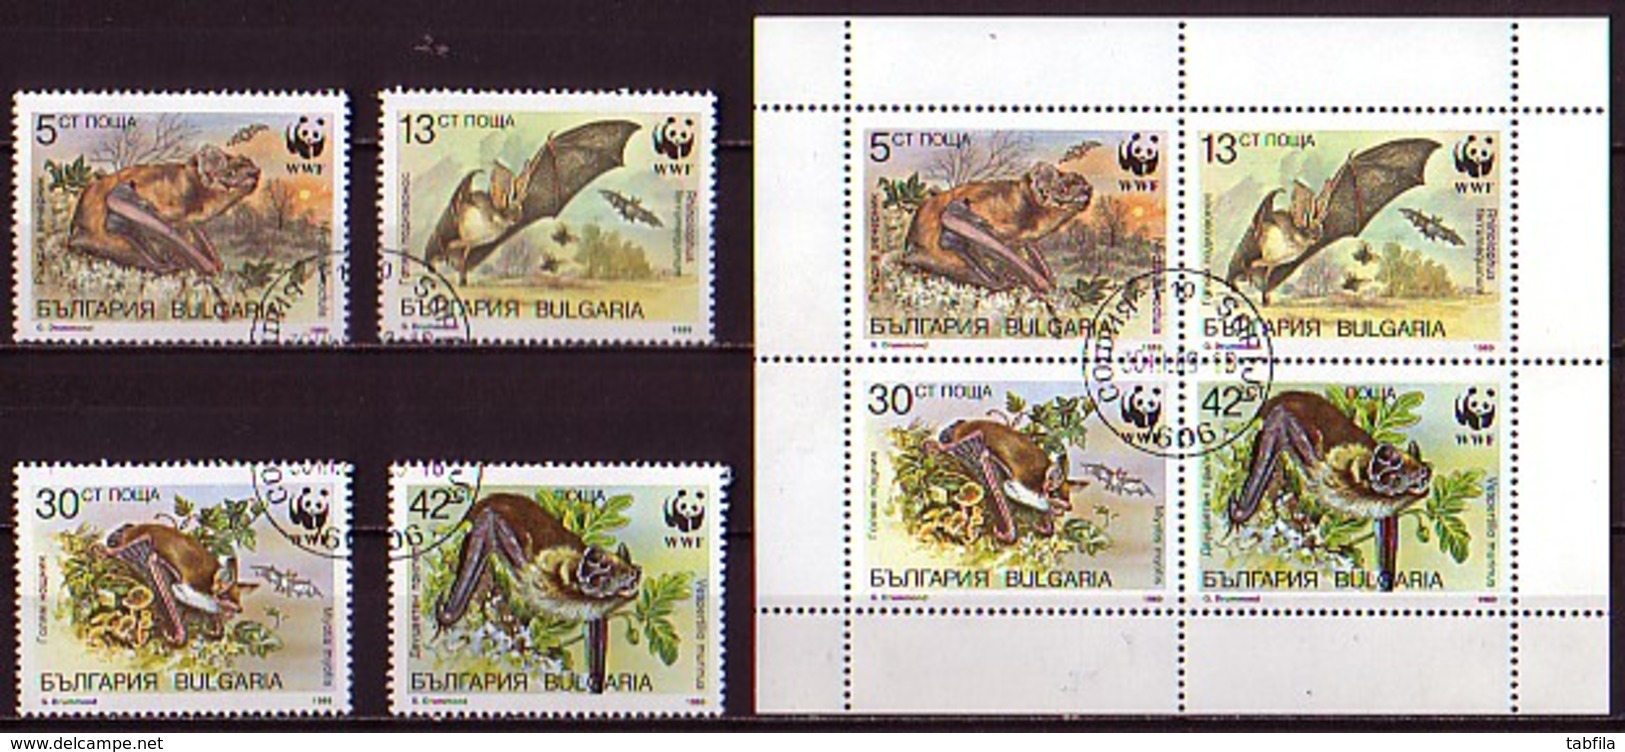 BULGARIA - 1989 -WWF - Protection De La Nature - Chauves-souris - 4v + PF  Obl. - Gebruikt